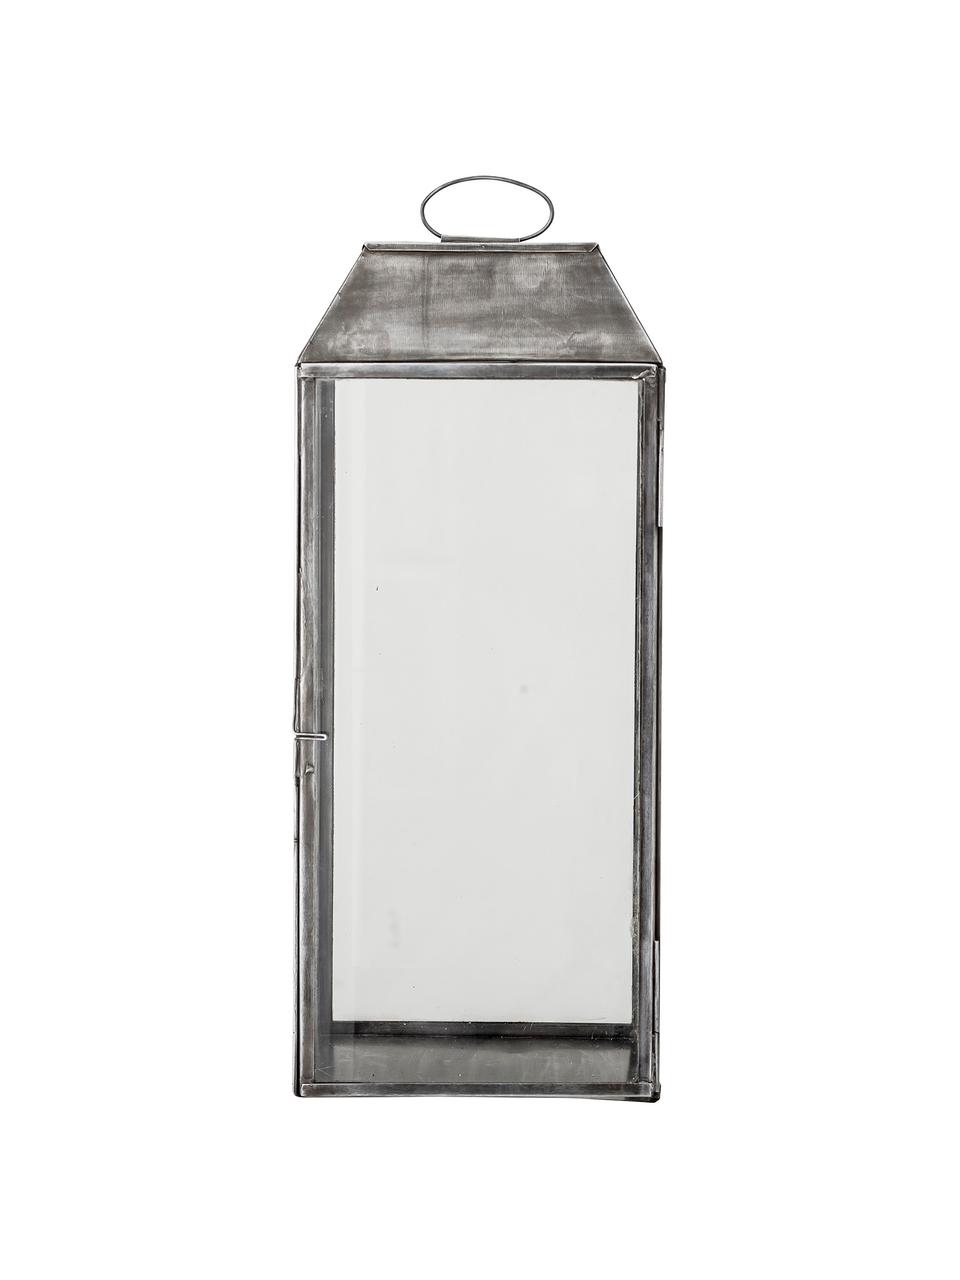 Grote lantaarn Gagriel, Frame: metaal, Zilverkleurig met antieke afwerking, B 20 x H 48 cm